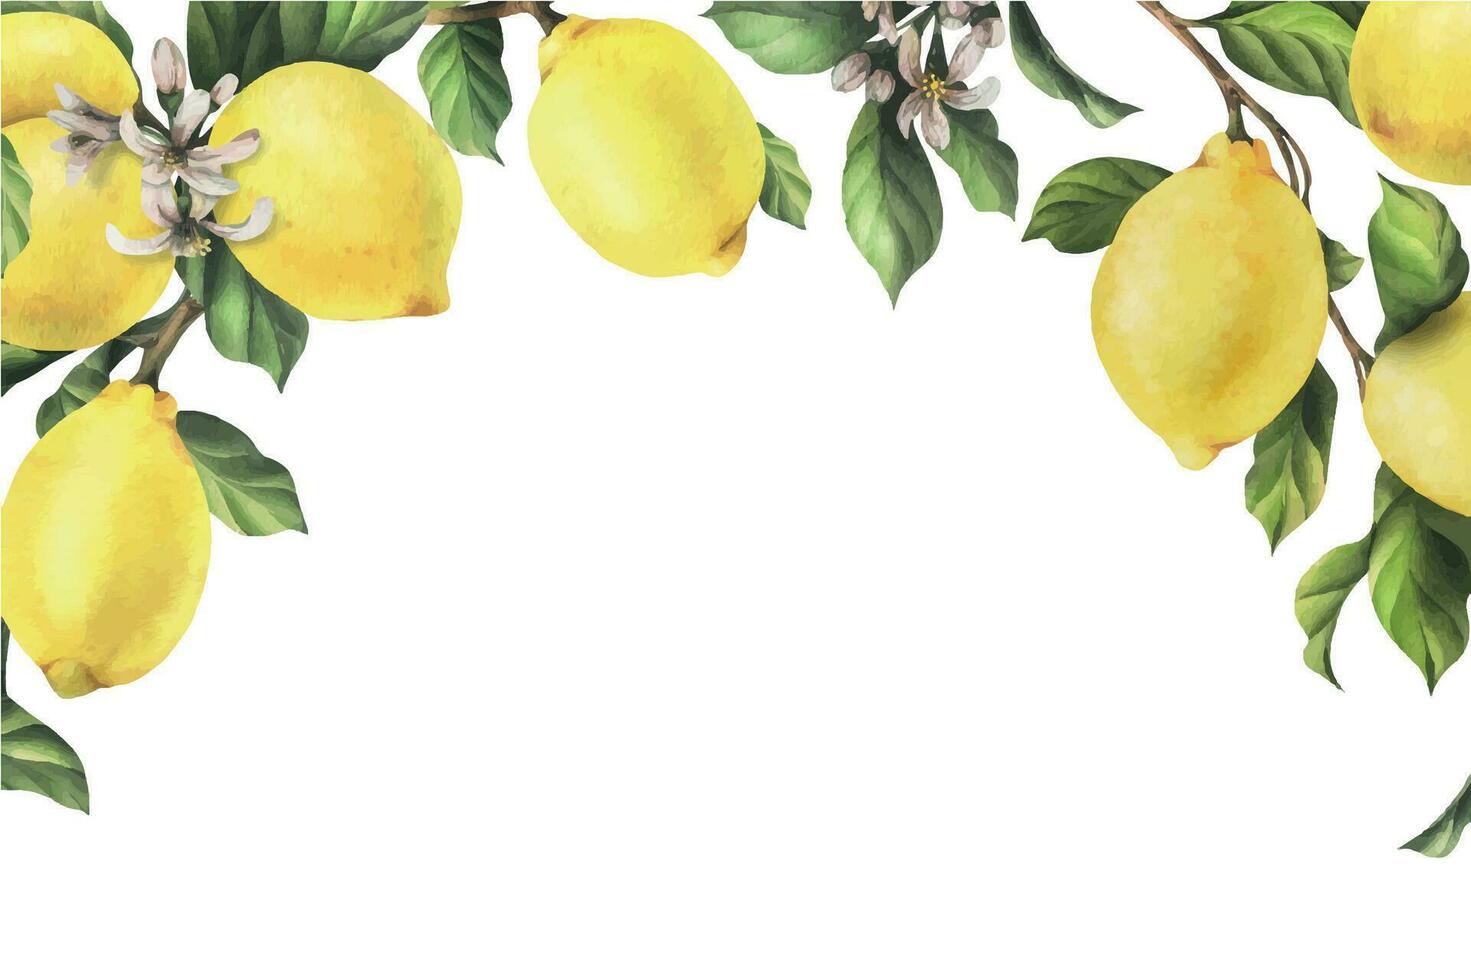 citroenen zijn geel, sappig, rijp met groen bladeren, bloem bloemknoppen Aan de takken, geheel en plakjes. waterverf, hand- getrokken botanisch illustratie. kader, sjabloon Aan een wit achtergrond vector